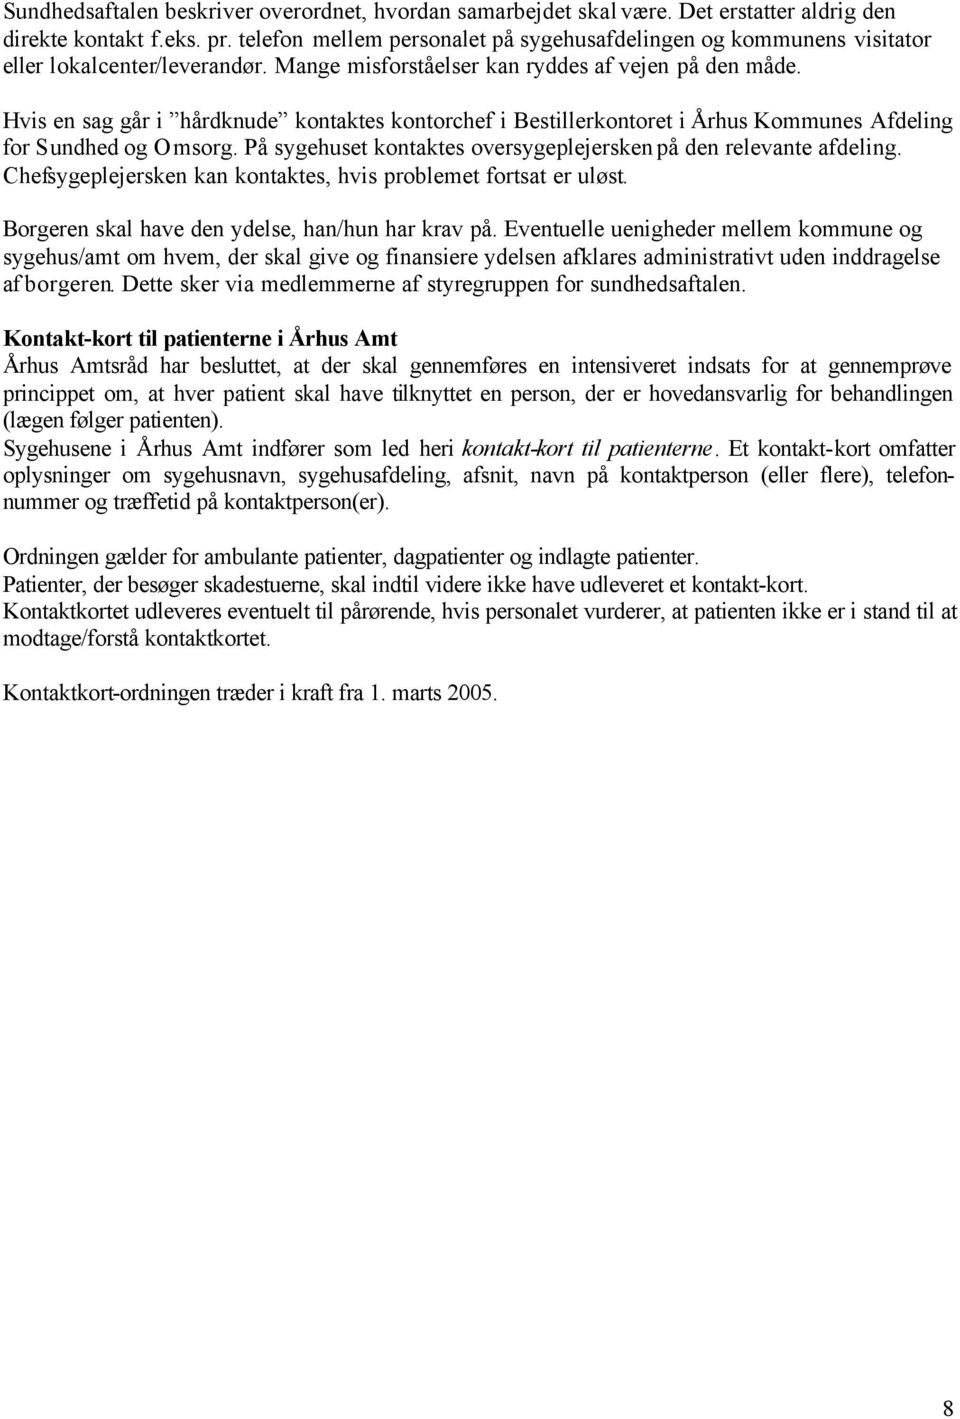 Hvis en sag går i hårdknude kontaktes kontorchef i Bestillerkontoret i Århus Kommunes Afdeling for Sundhed og Omsorg. På sygehuset kontaktes oversygeplejersken på den relevante afdeling.